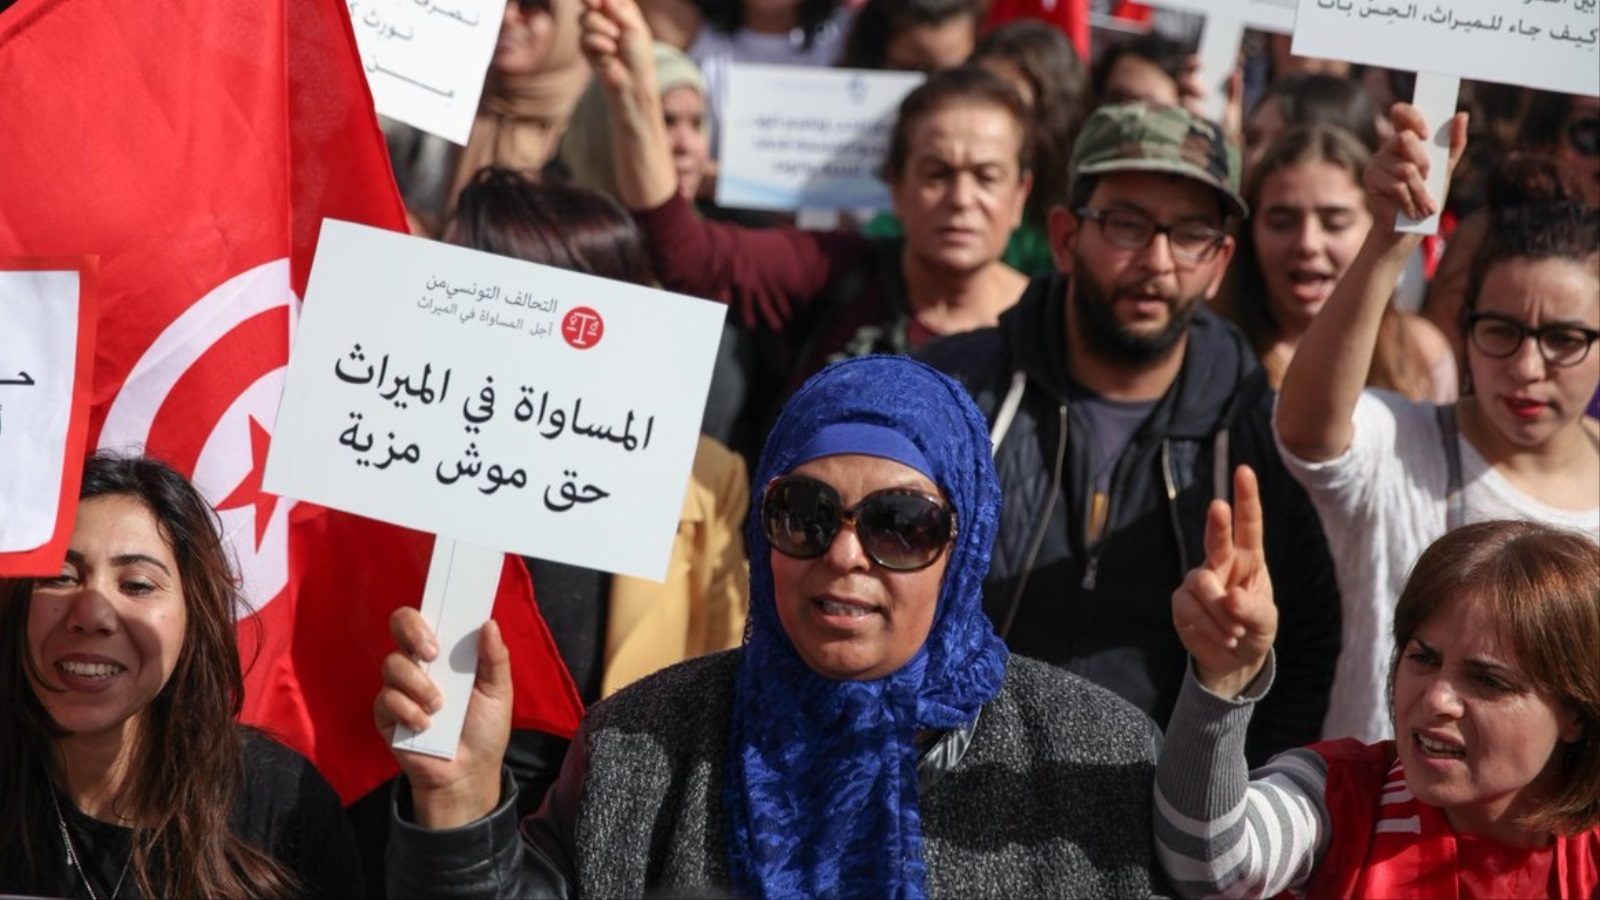 أصبح الهم الوحيد للنظام البحث عن بعض القضايا التي يعتبرها البعض سابقة لأوانها وأطراف أخرى تعتبرها قضايا تمس من عقيدة الشعب التونسي المسلم كمسائل المساواة في الميراث أو المثلية